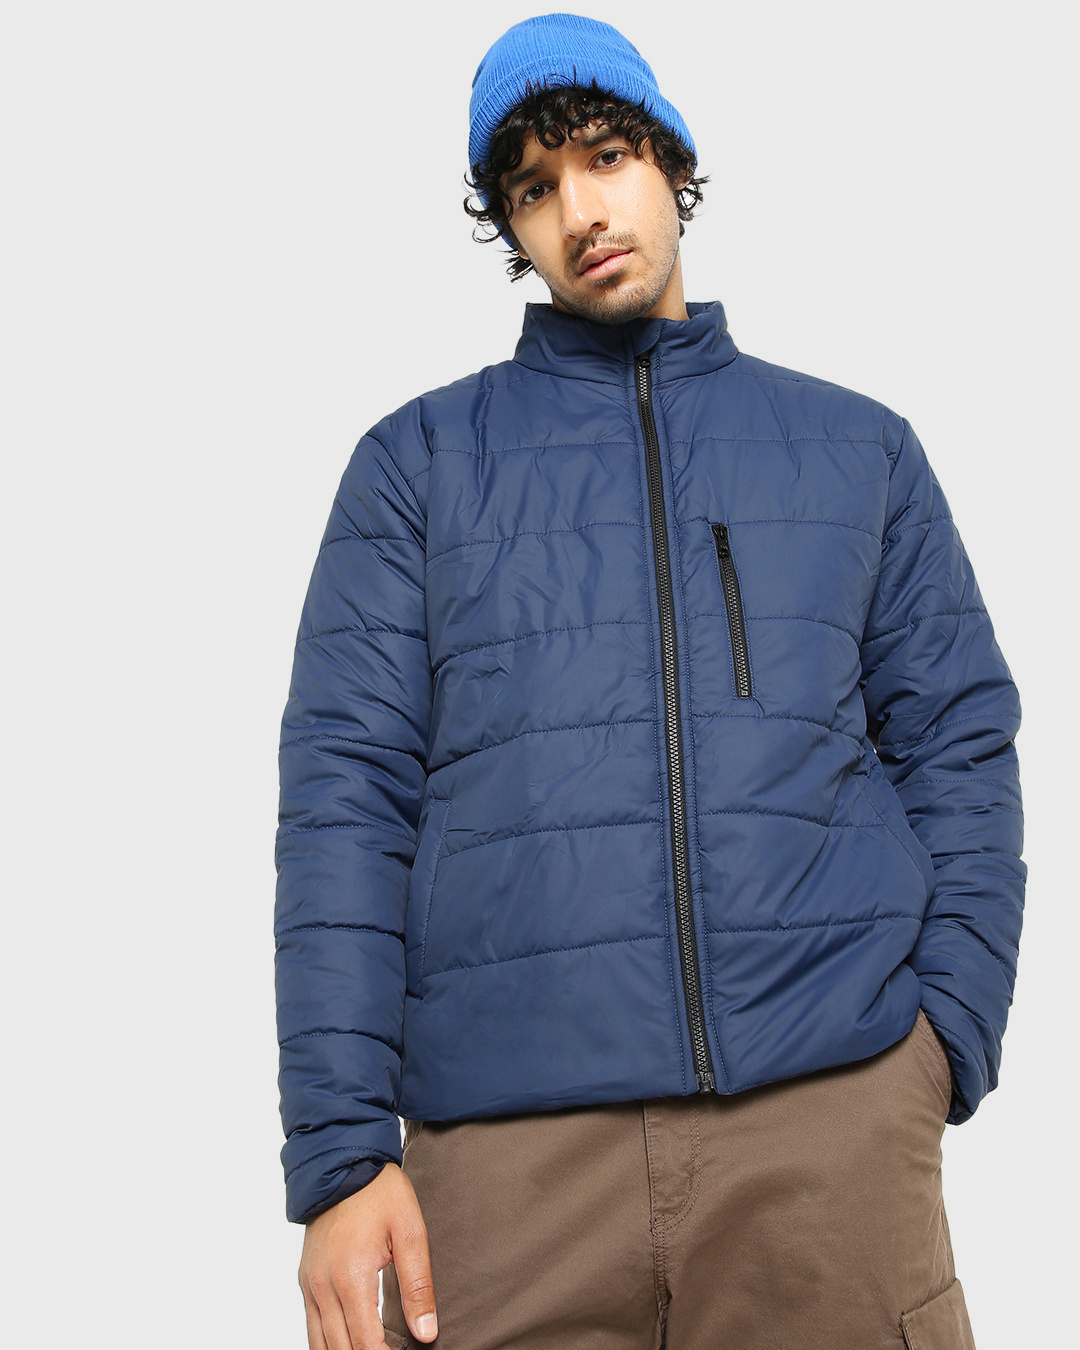 Buy Men's Blue Oversized Puffer Jacket Online at Bewakoof